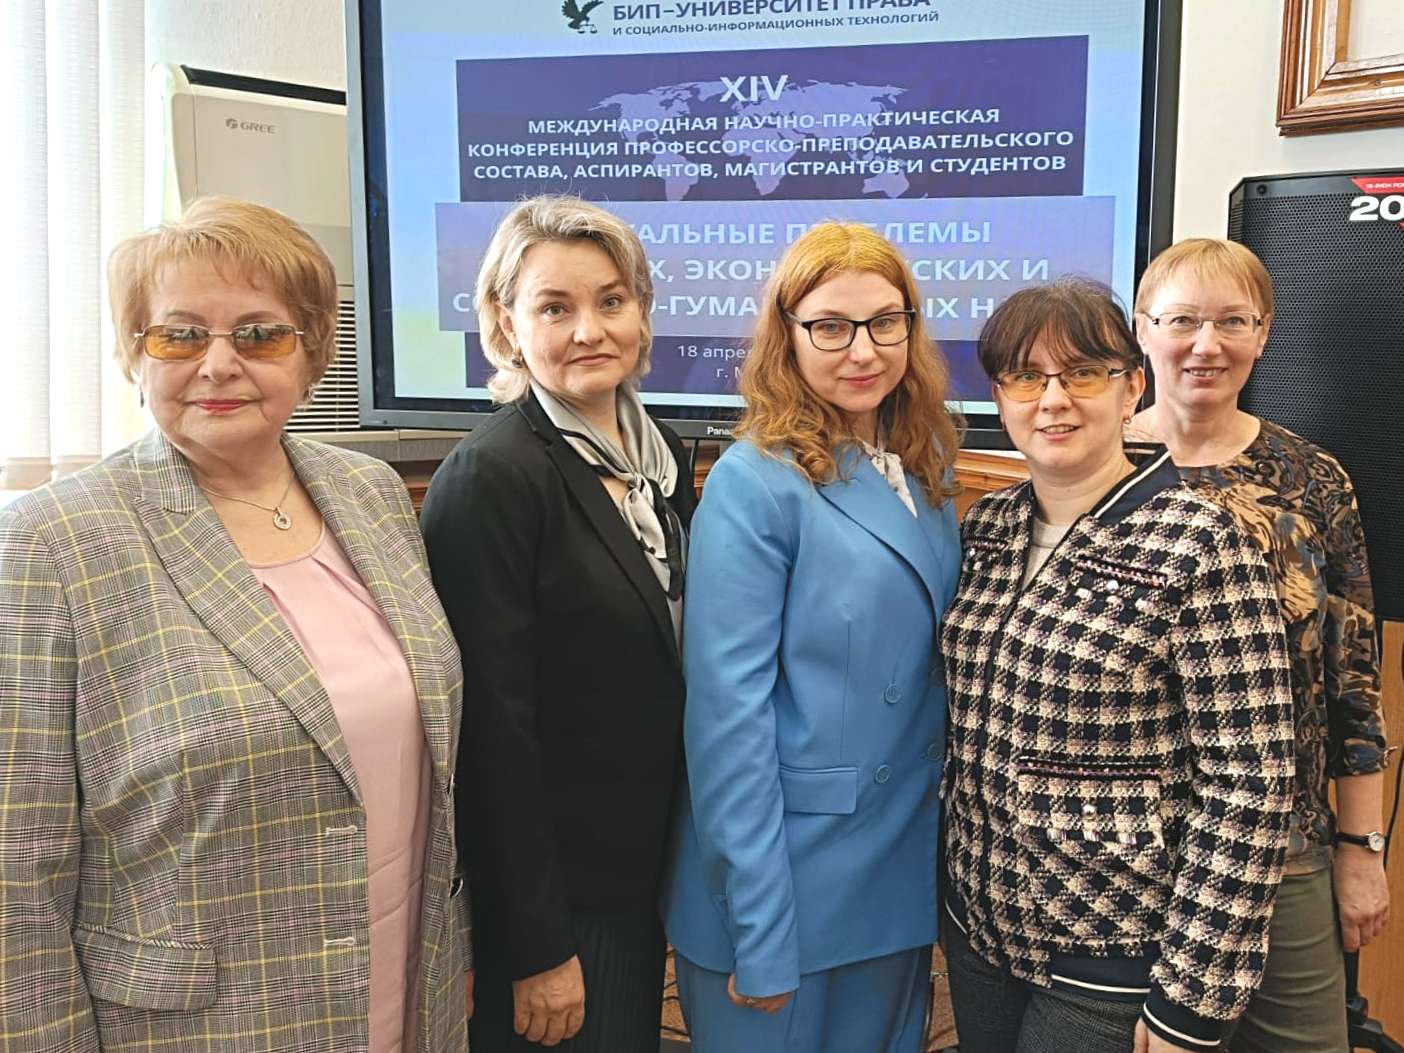  Сотрудники МГППУ выступили на международной конференции в Минске 